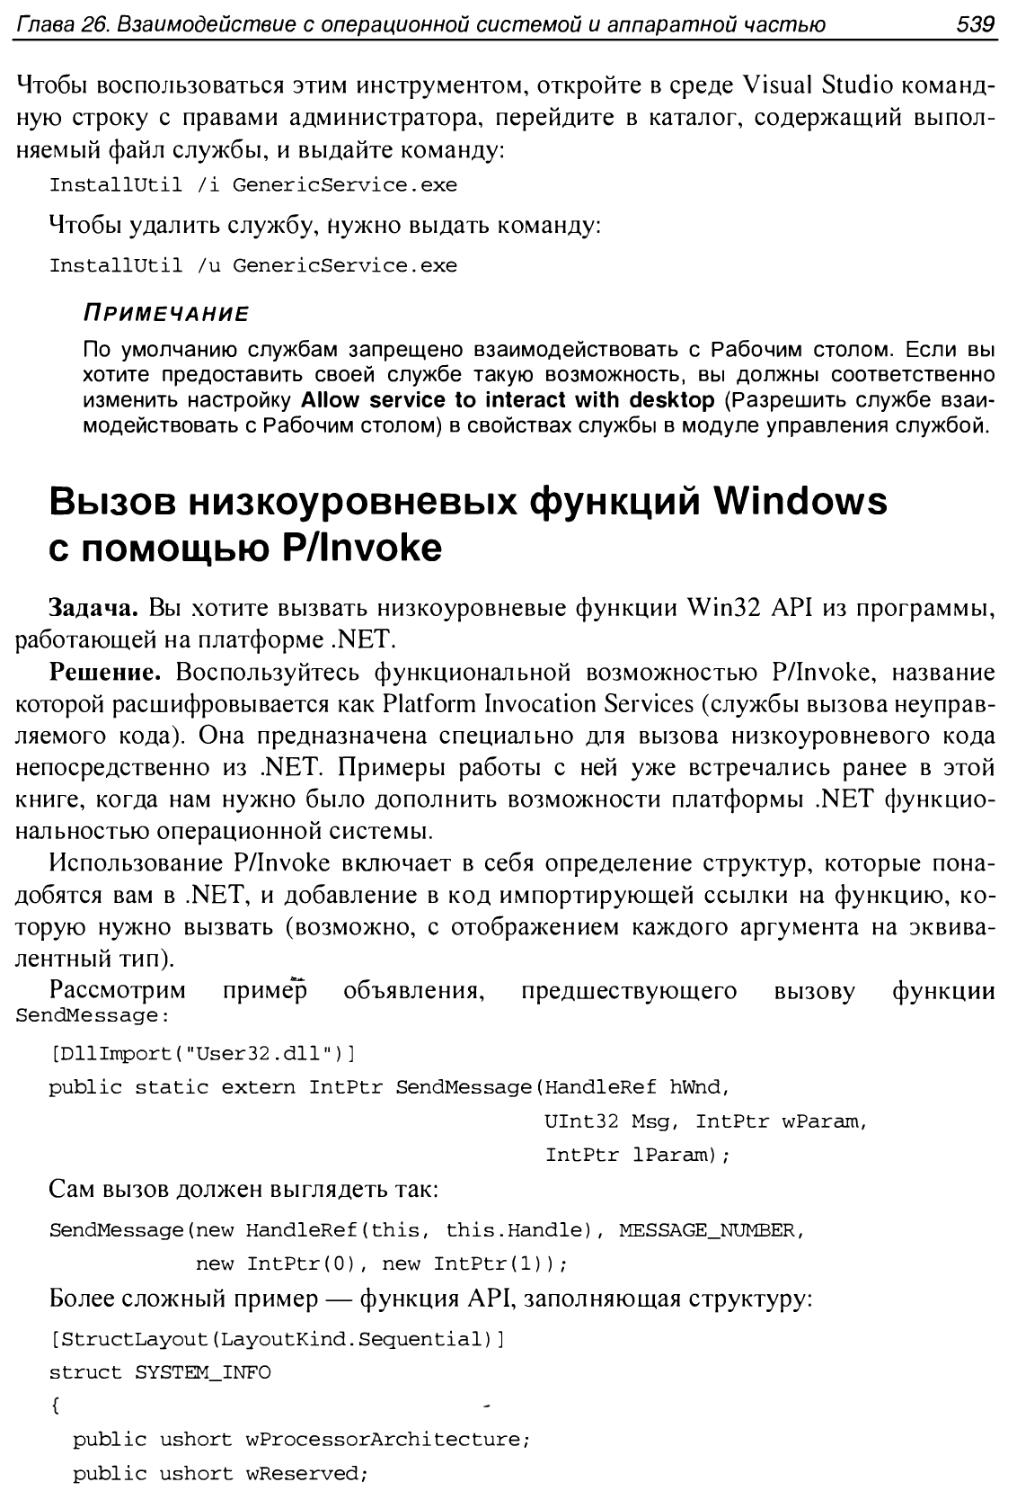 Вызов низкоуровневых функций Windows с помощью P/Invoke